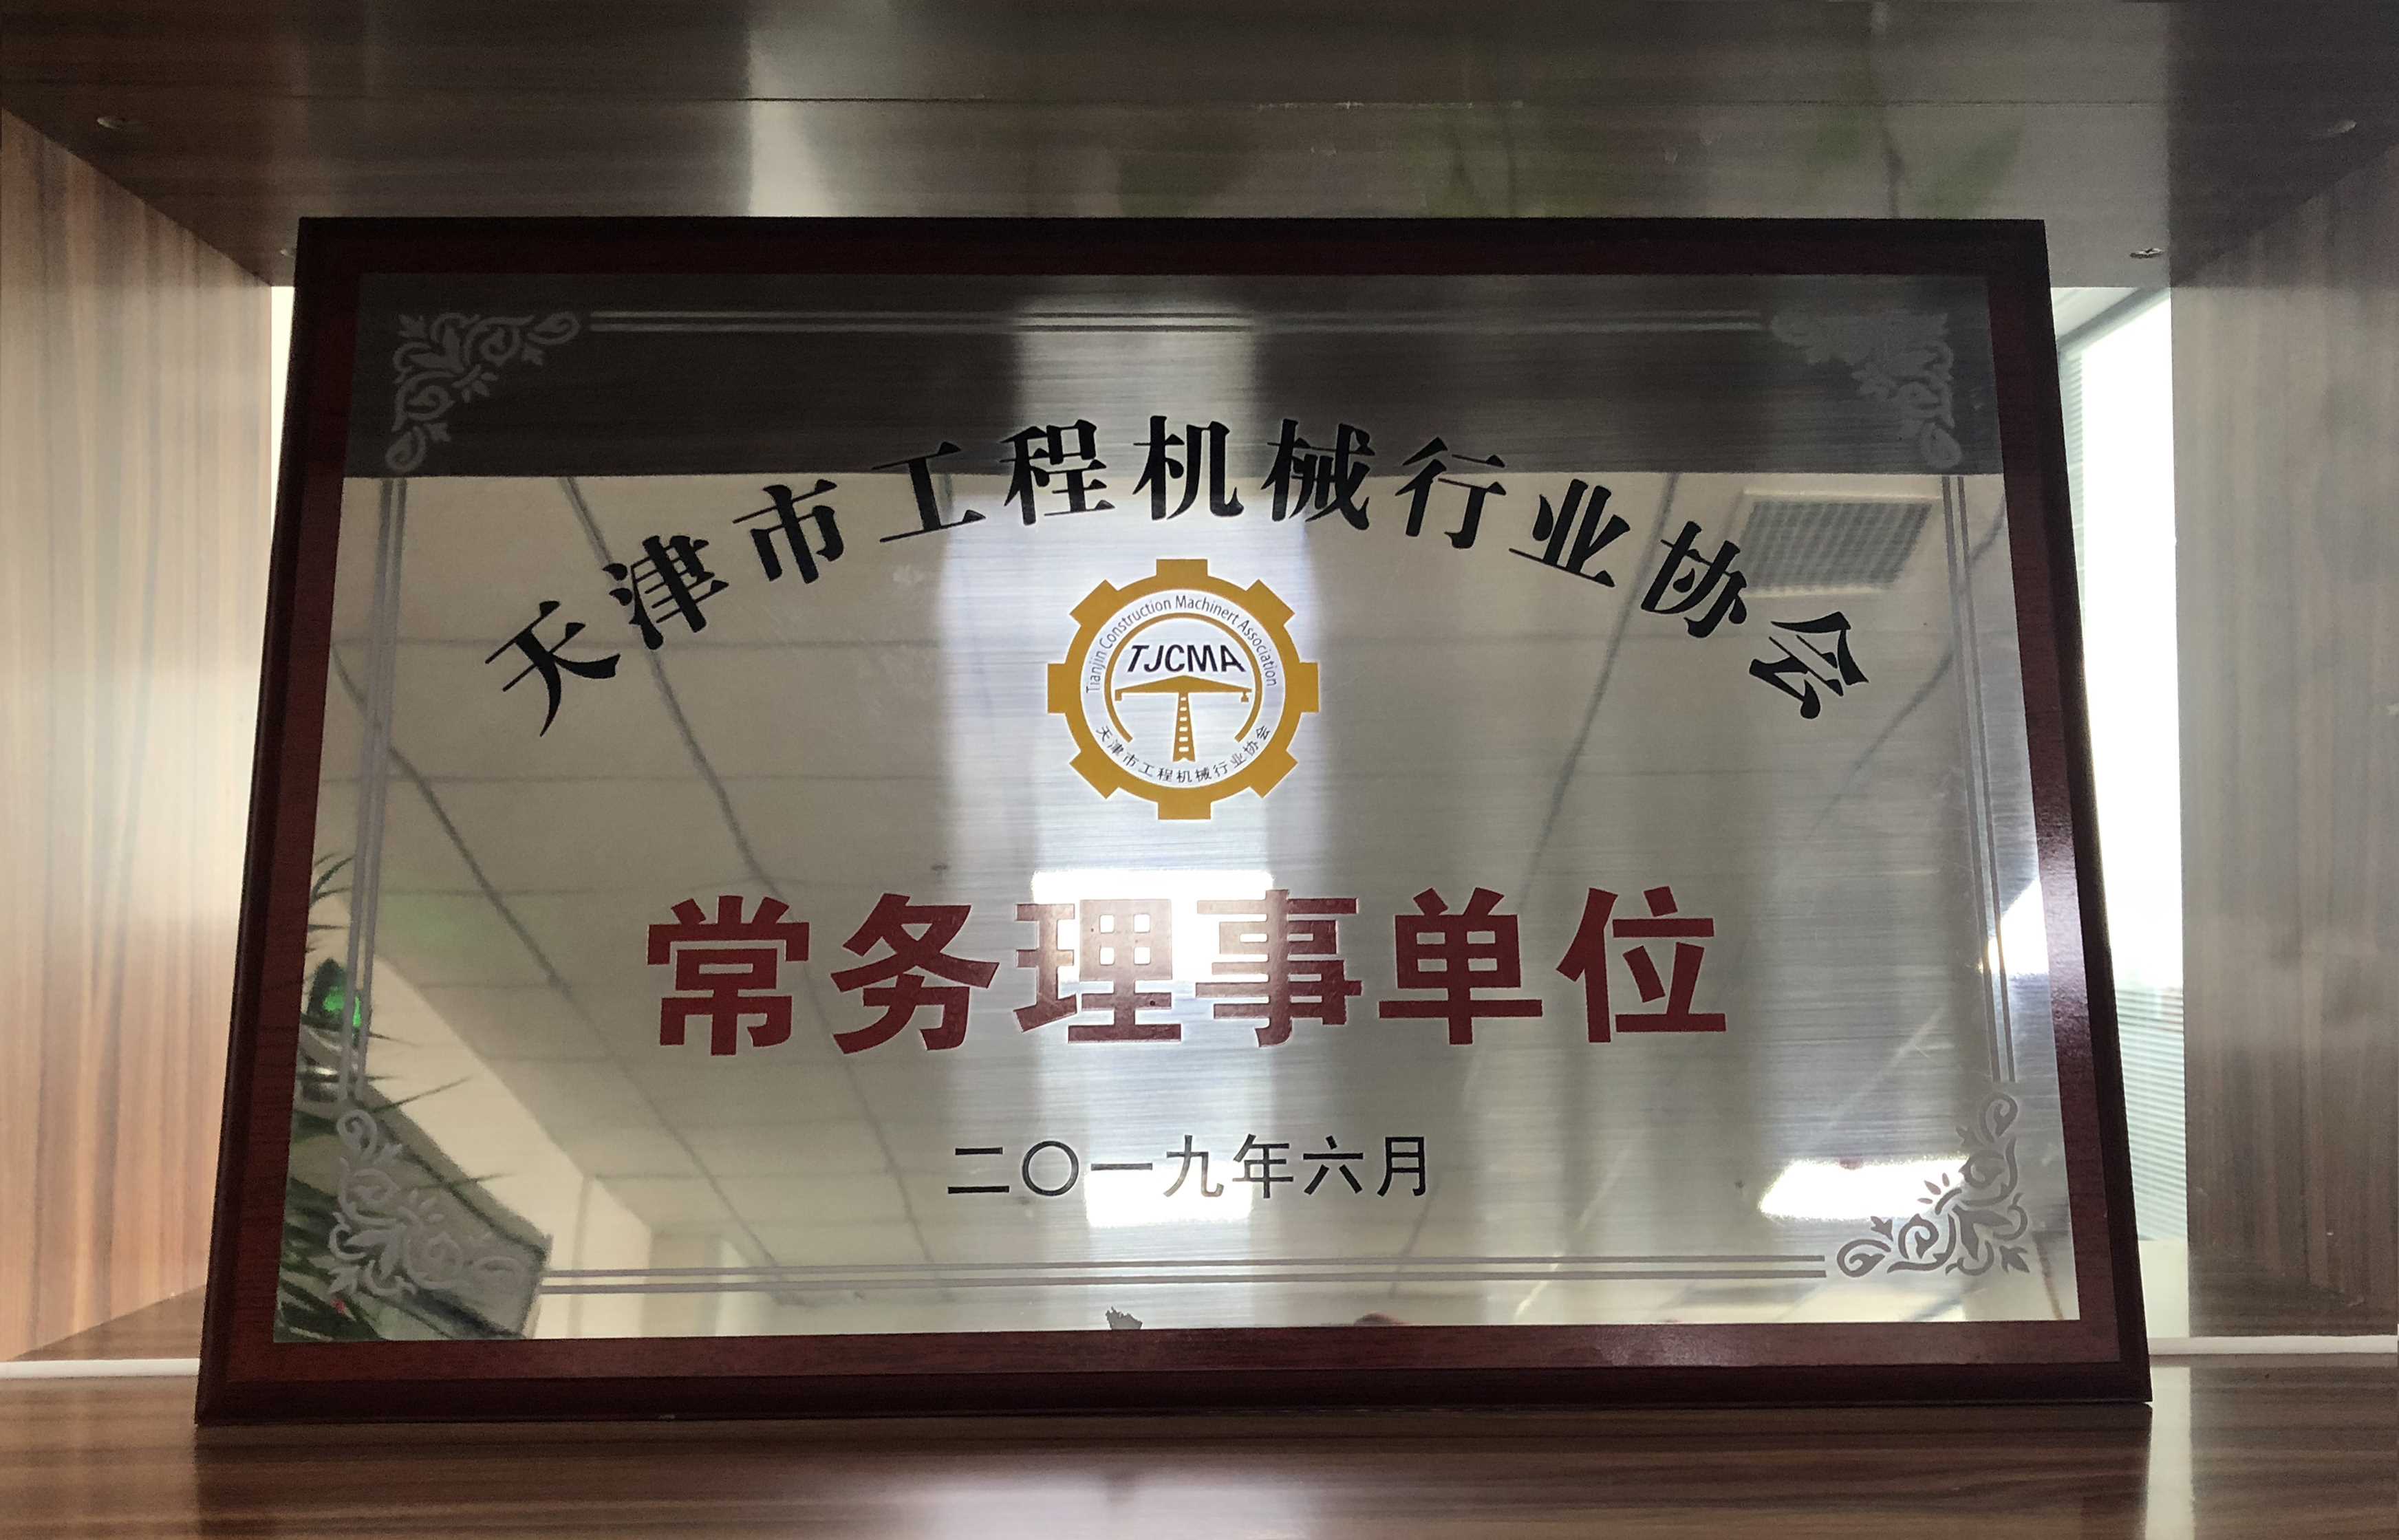 2.7.13资质奖项-天津市工程机械行业协会常务理事单位